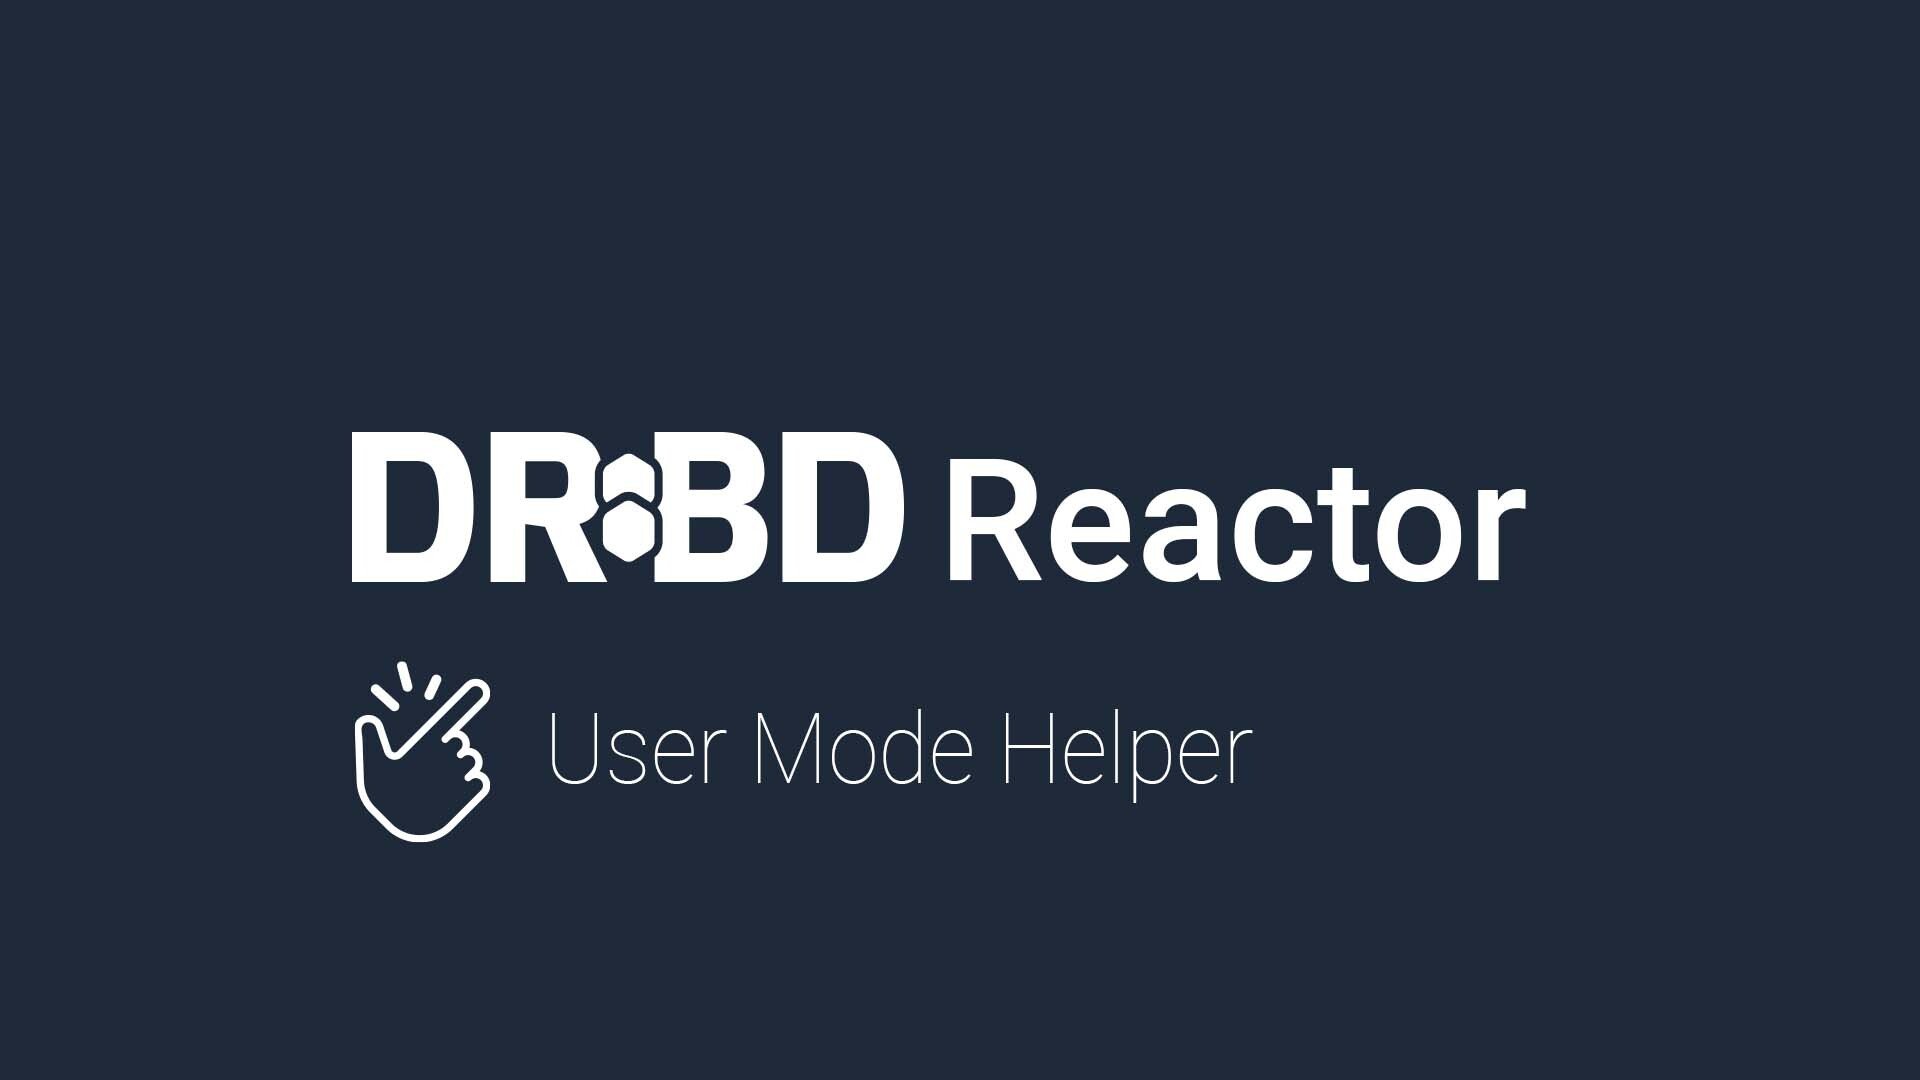 DRBD Reactor – User Mode Helper